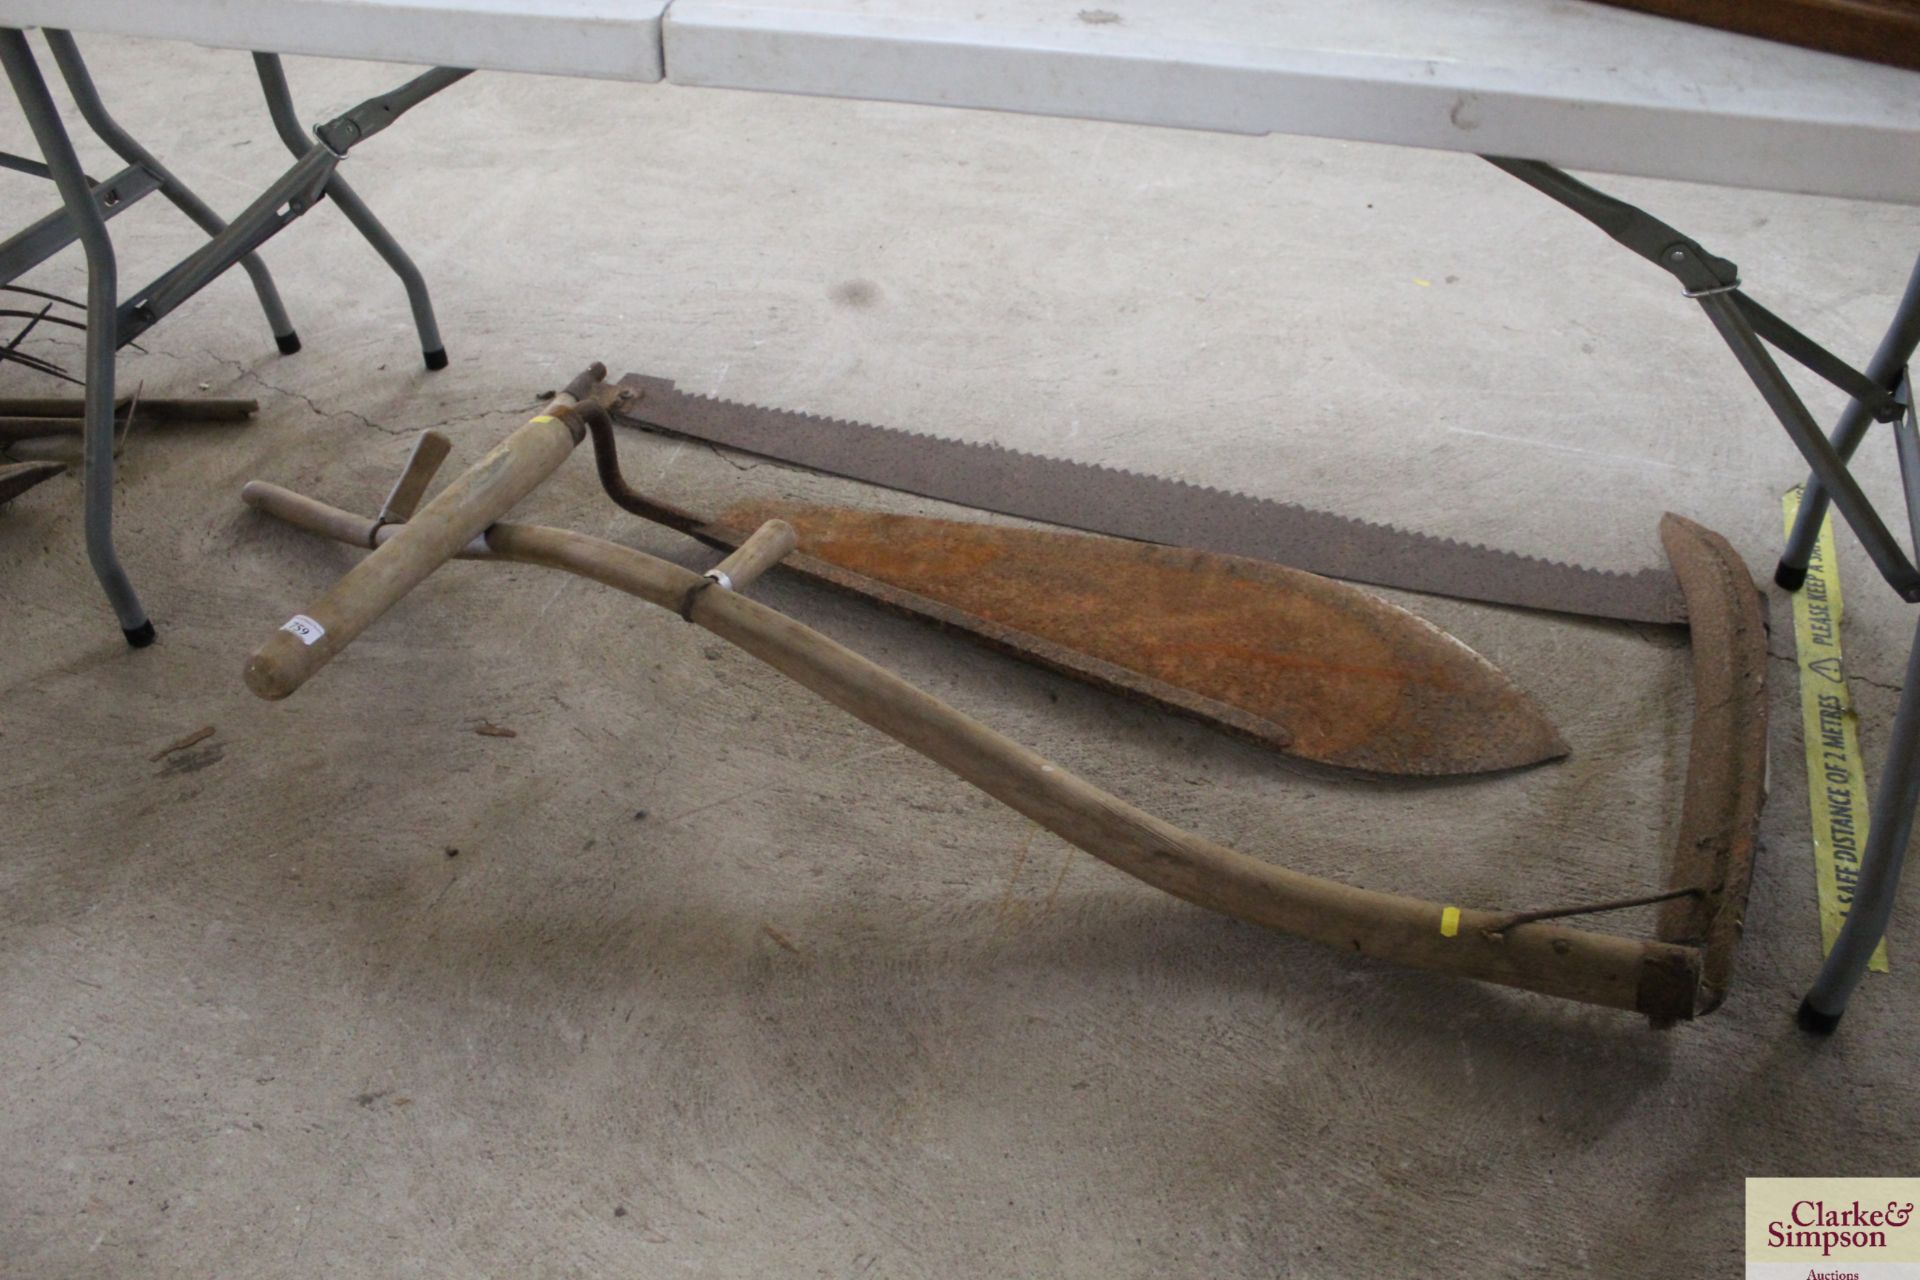 A scythe, a large hay knife and a cross cut saw